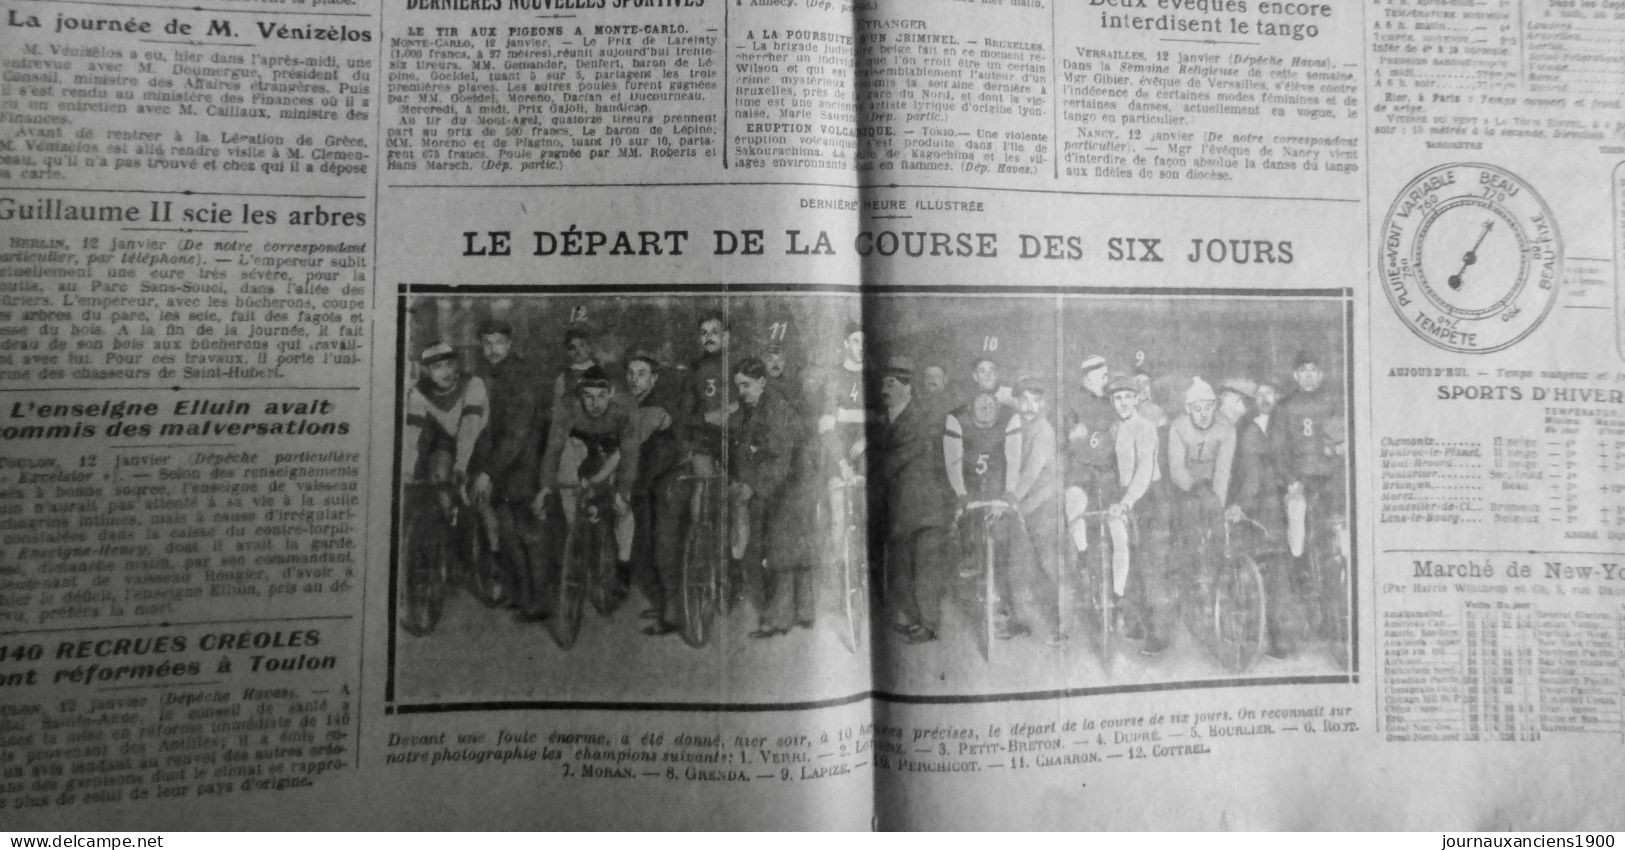 1914 EXCELSIOR ARTICLE DE PRESSE CYCLISME COURSE SIX JOURS VERRI 1 JOURNAL ANCIE - Glass Slides